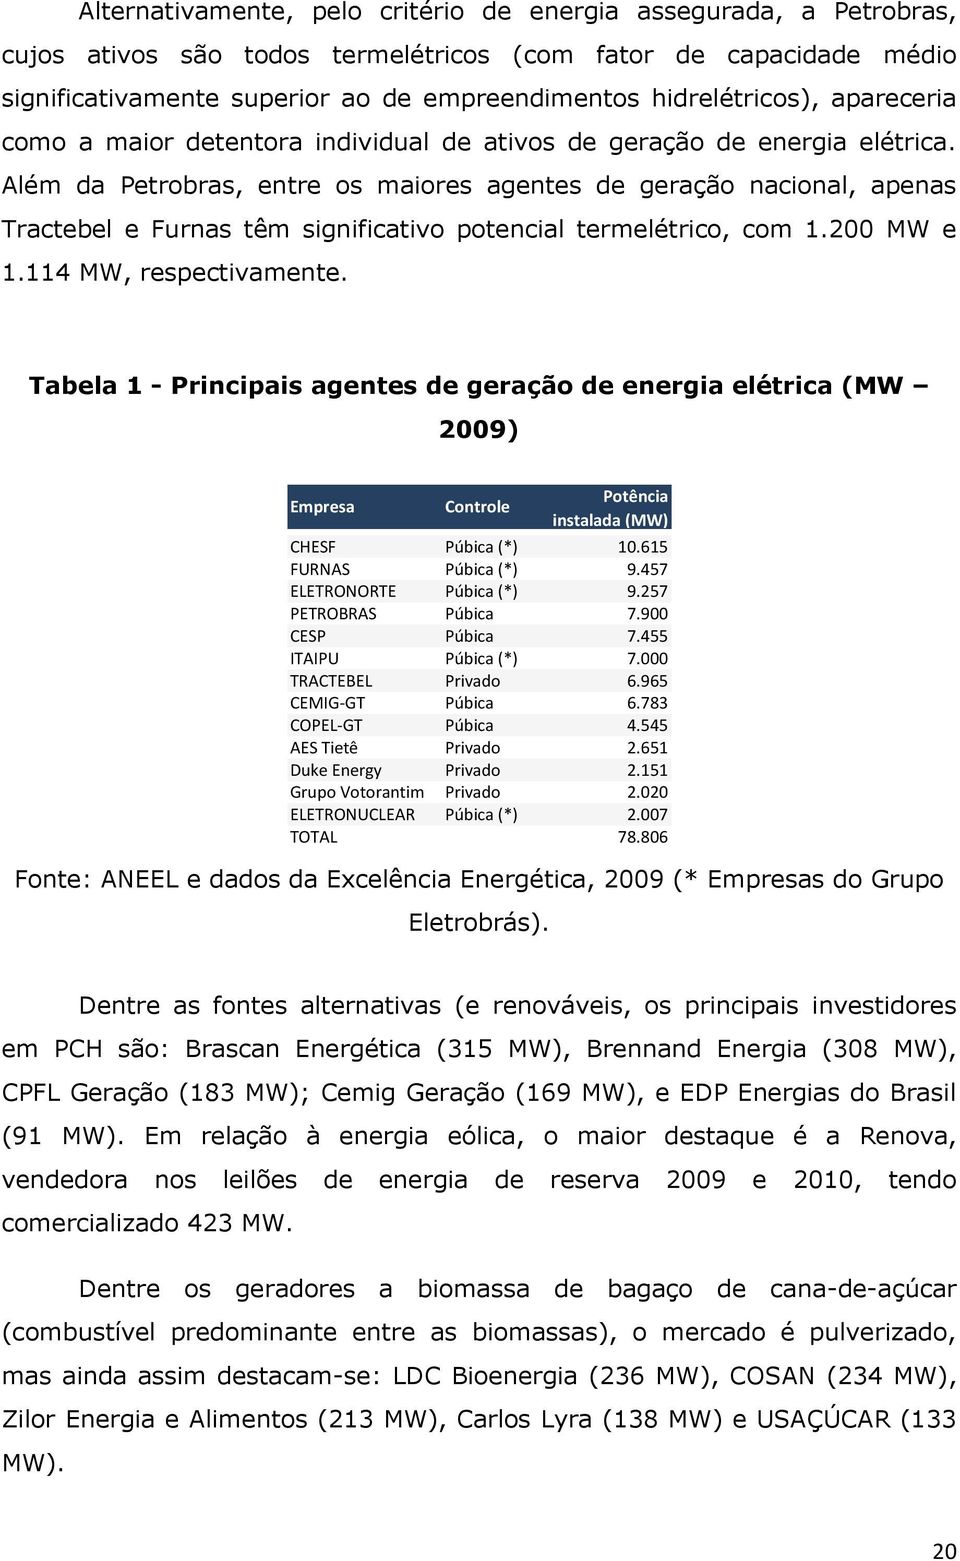 Além da Petrobras, entre os maiores agentes de geração nacional, apenas Tractebel e Furnas têm significativo potencial termelétrico, com 1.200 MW e 1.114 MW, respectivamente.